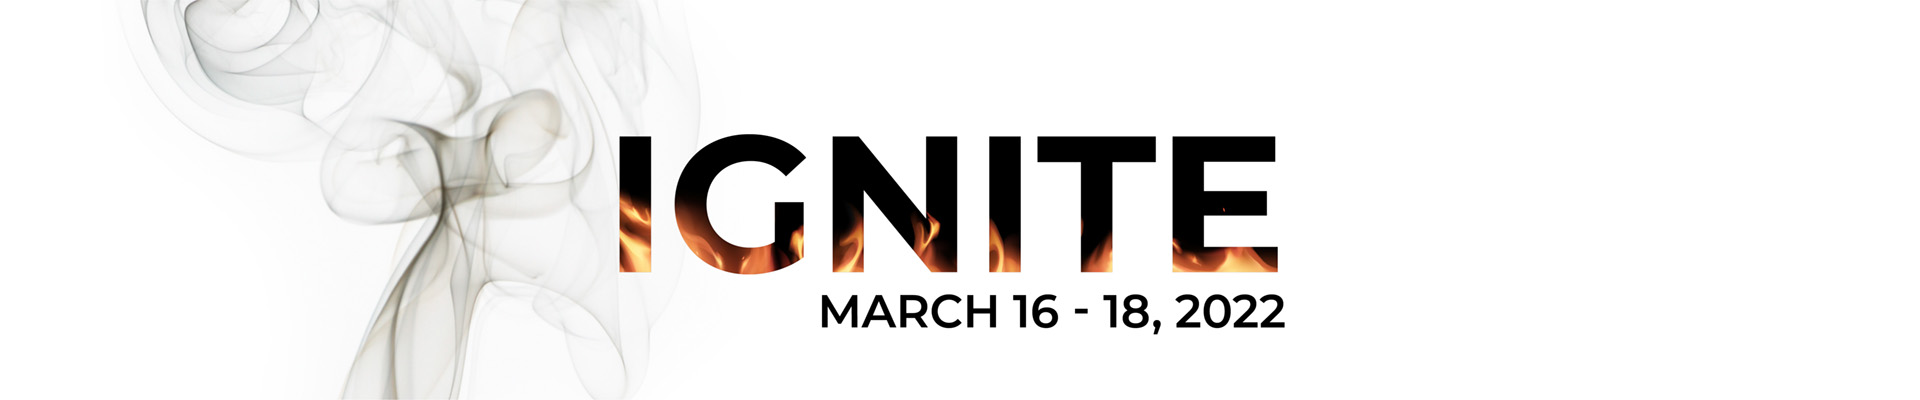 Ignite - March 16 - 18, 2022